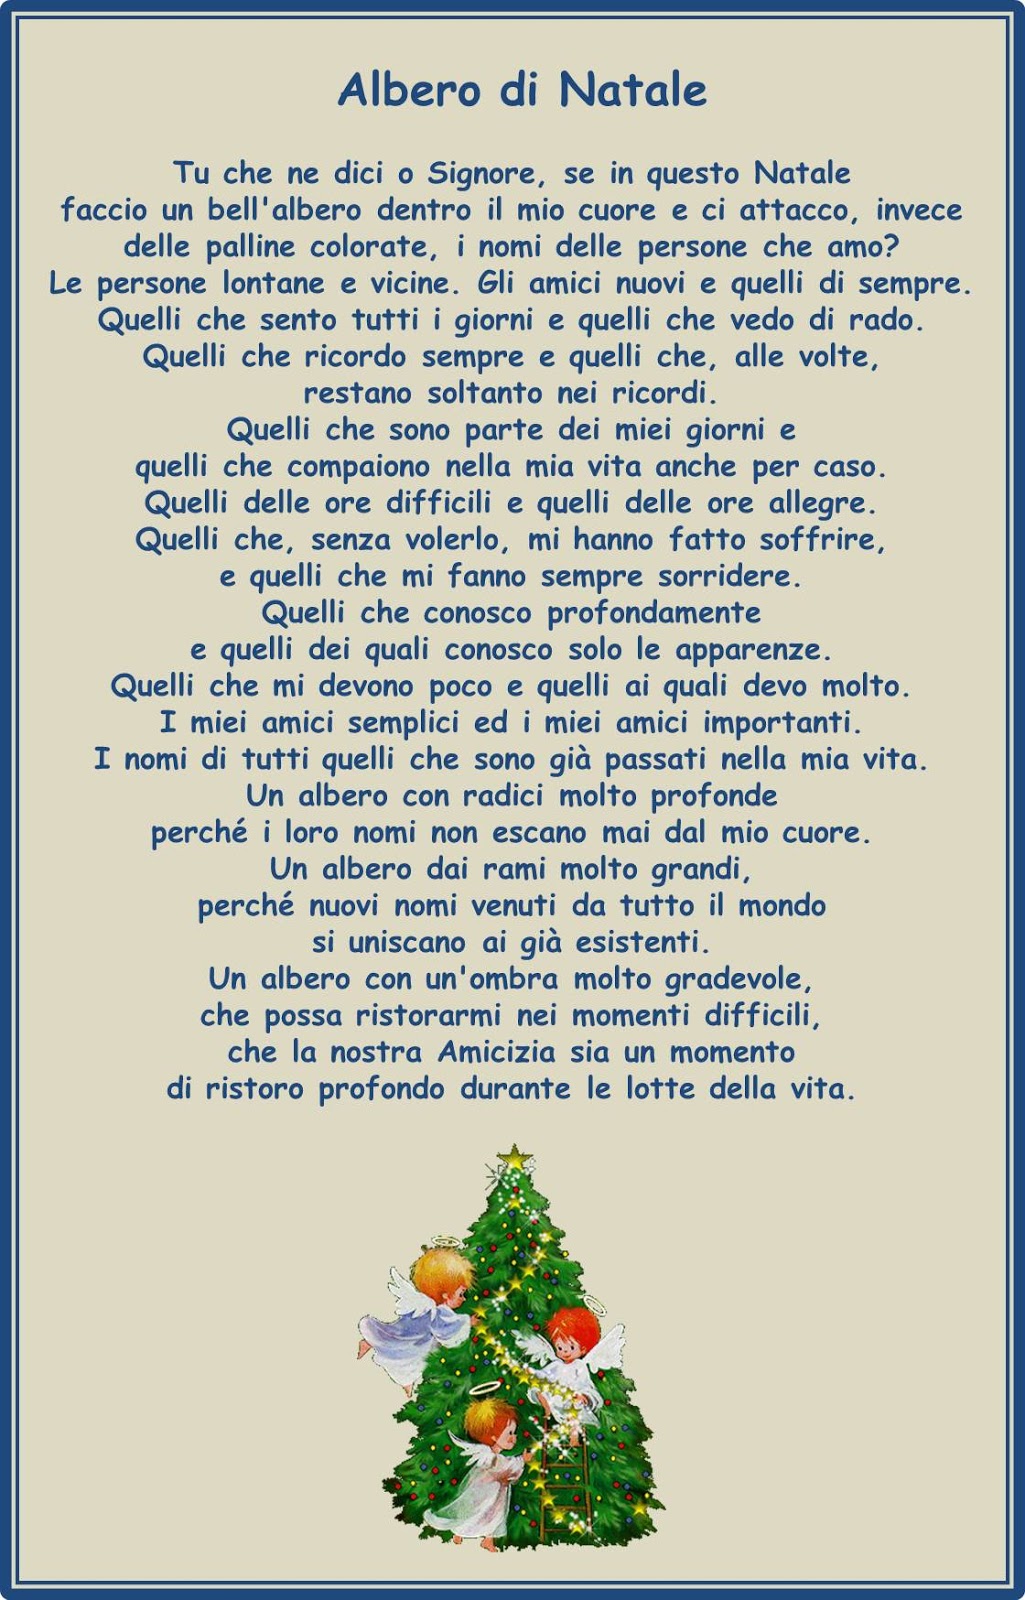 Poesie Di Natale Sullalbero.Francesca Ceccherini Testi E Immagini Di Psicologia Sociale Religione Poesia Narrativa Poesia Dell Albero Di Natale